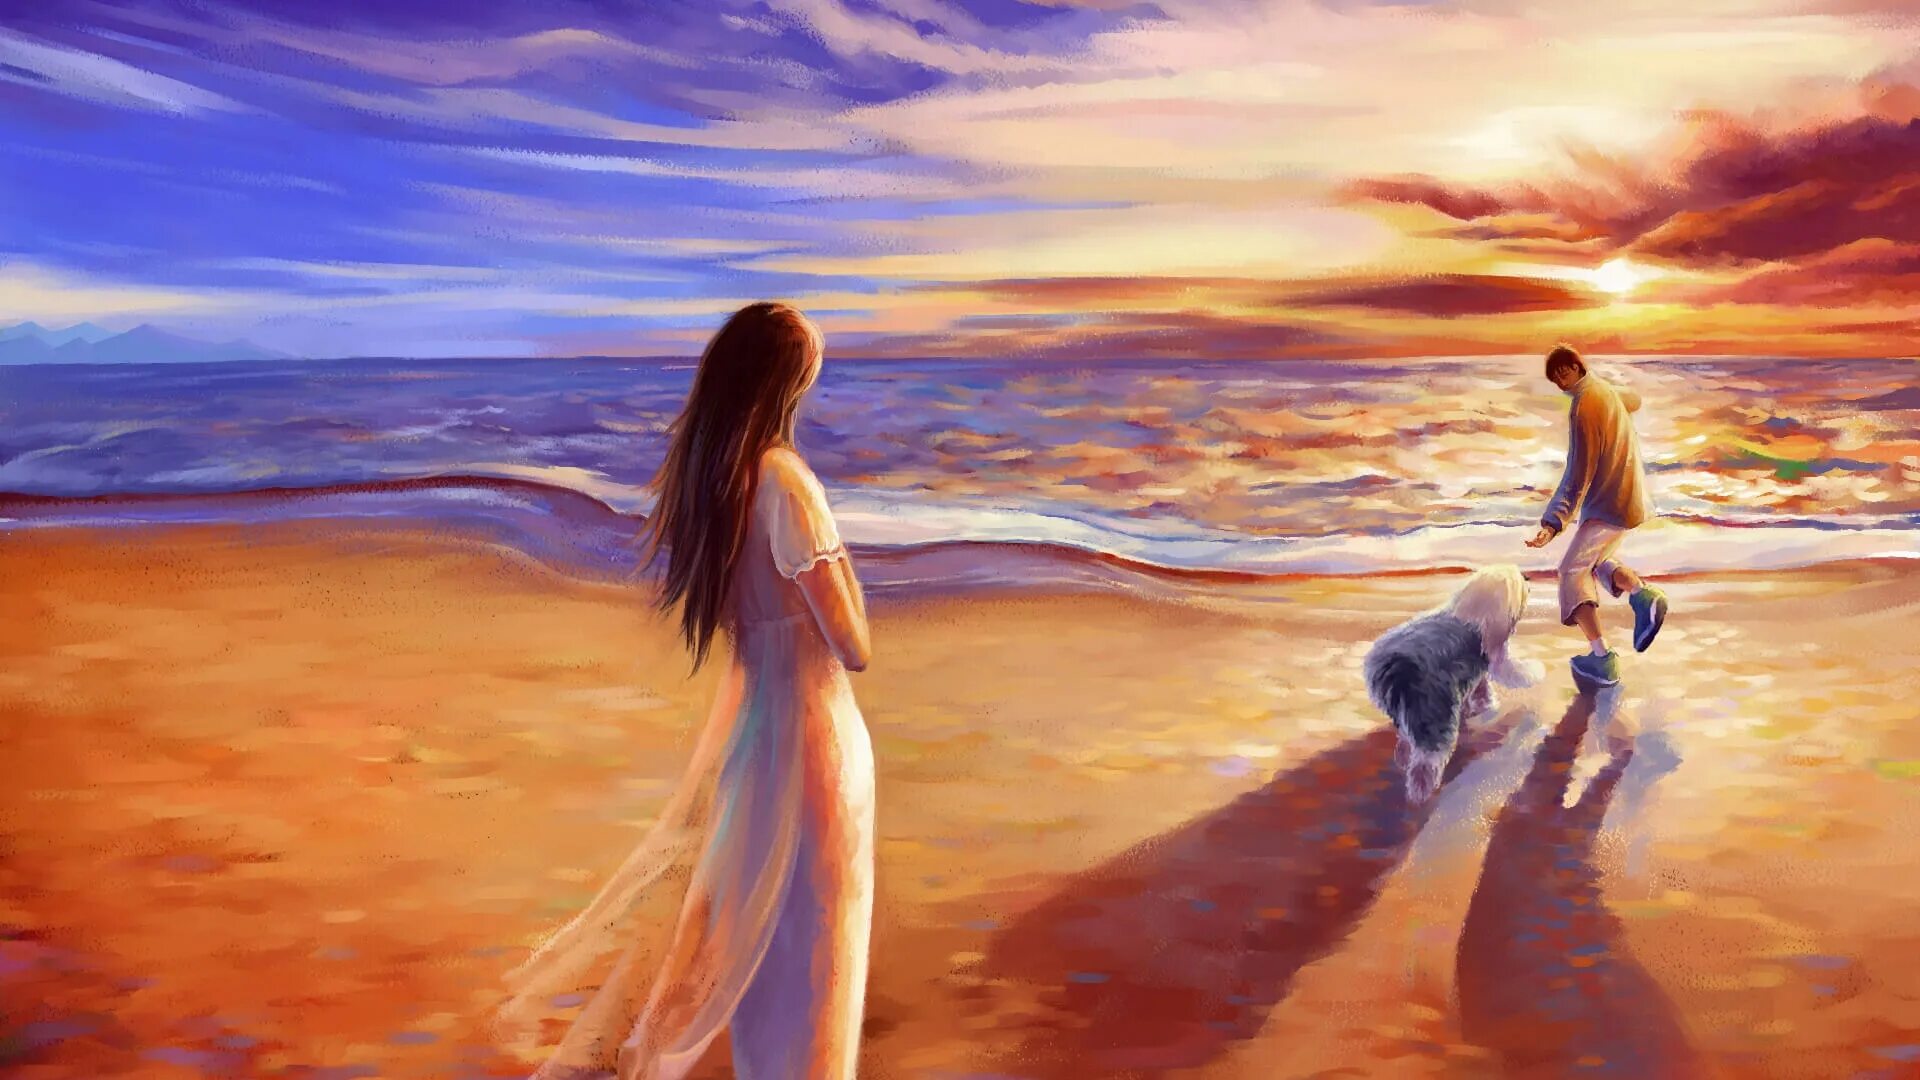 Красивые пейзажи с людьми. Девушка на берегу моря. Красивые картины. Душевные картины. У всего живого есть свои сокровенные тайны